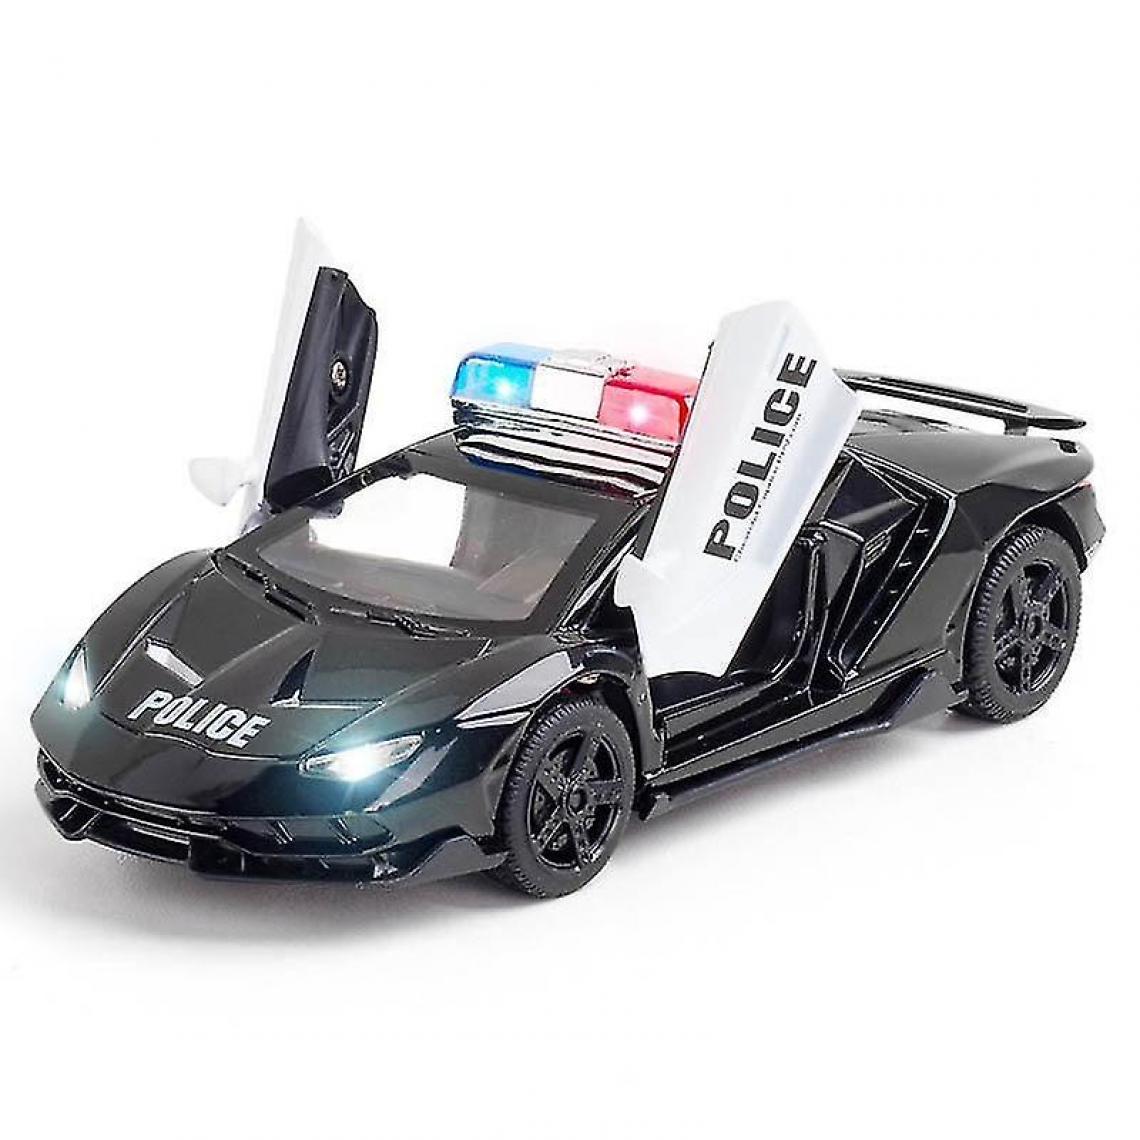 Universal - 1/32 alliage moulage sous pression police modèle supercar jouet voiture son et lumière tirer en arrière voiture de sport jouet(Le noir) - Voitures